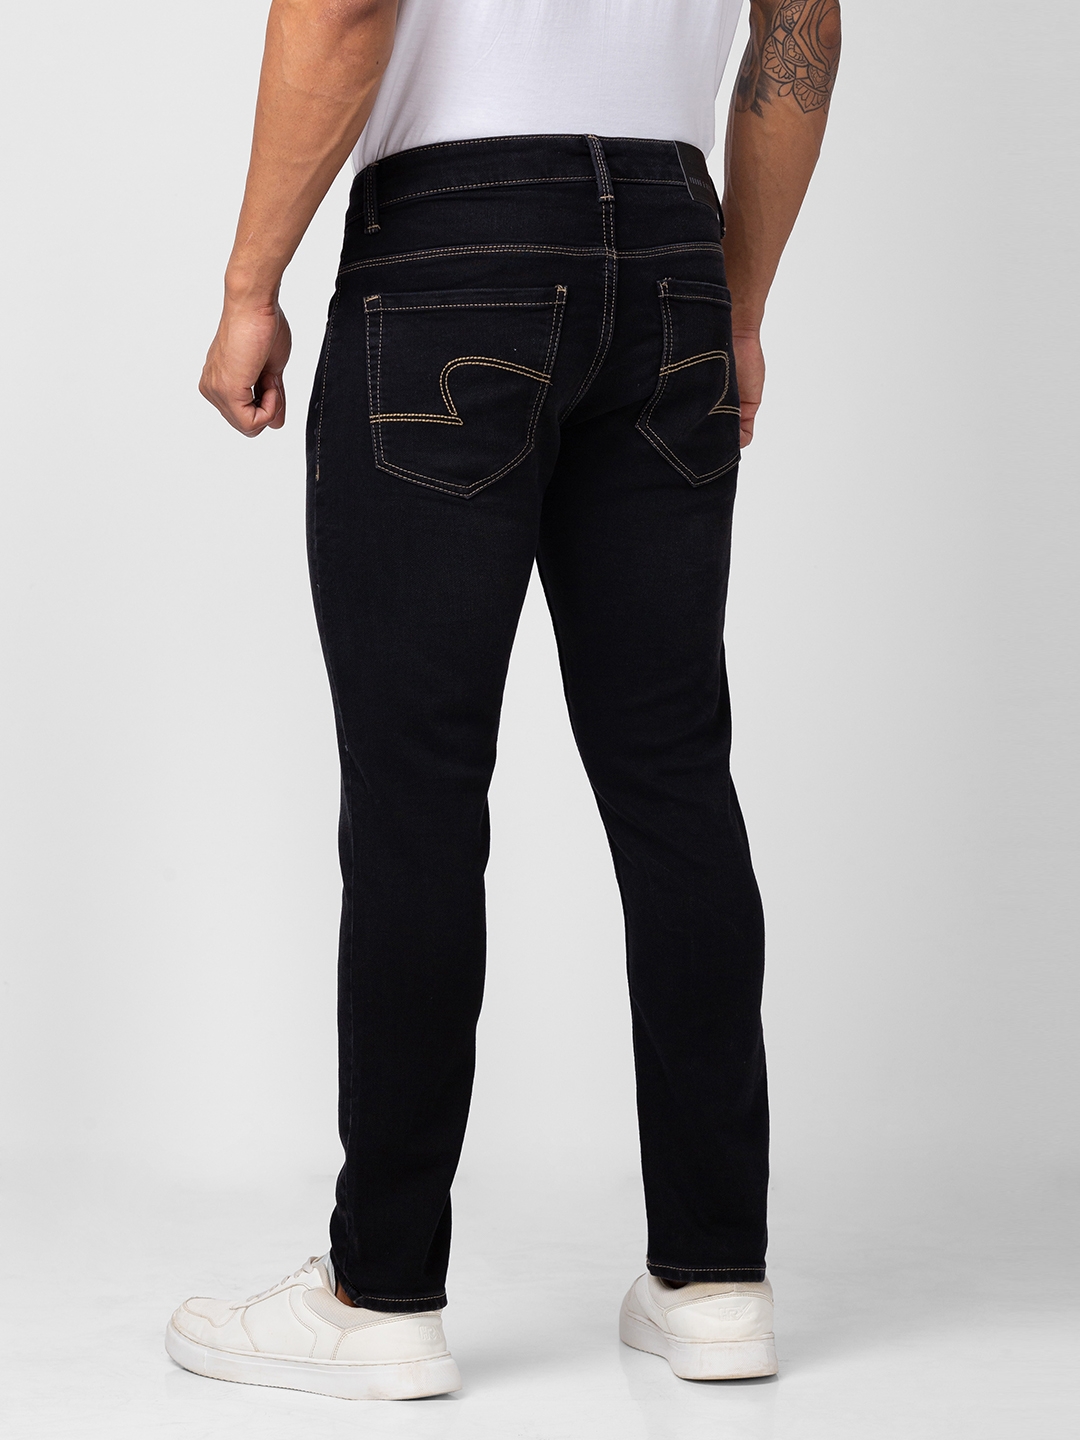 spykar | Men's Black Cotton Solid Jeans 2